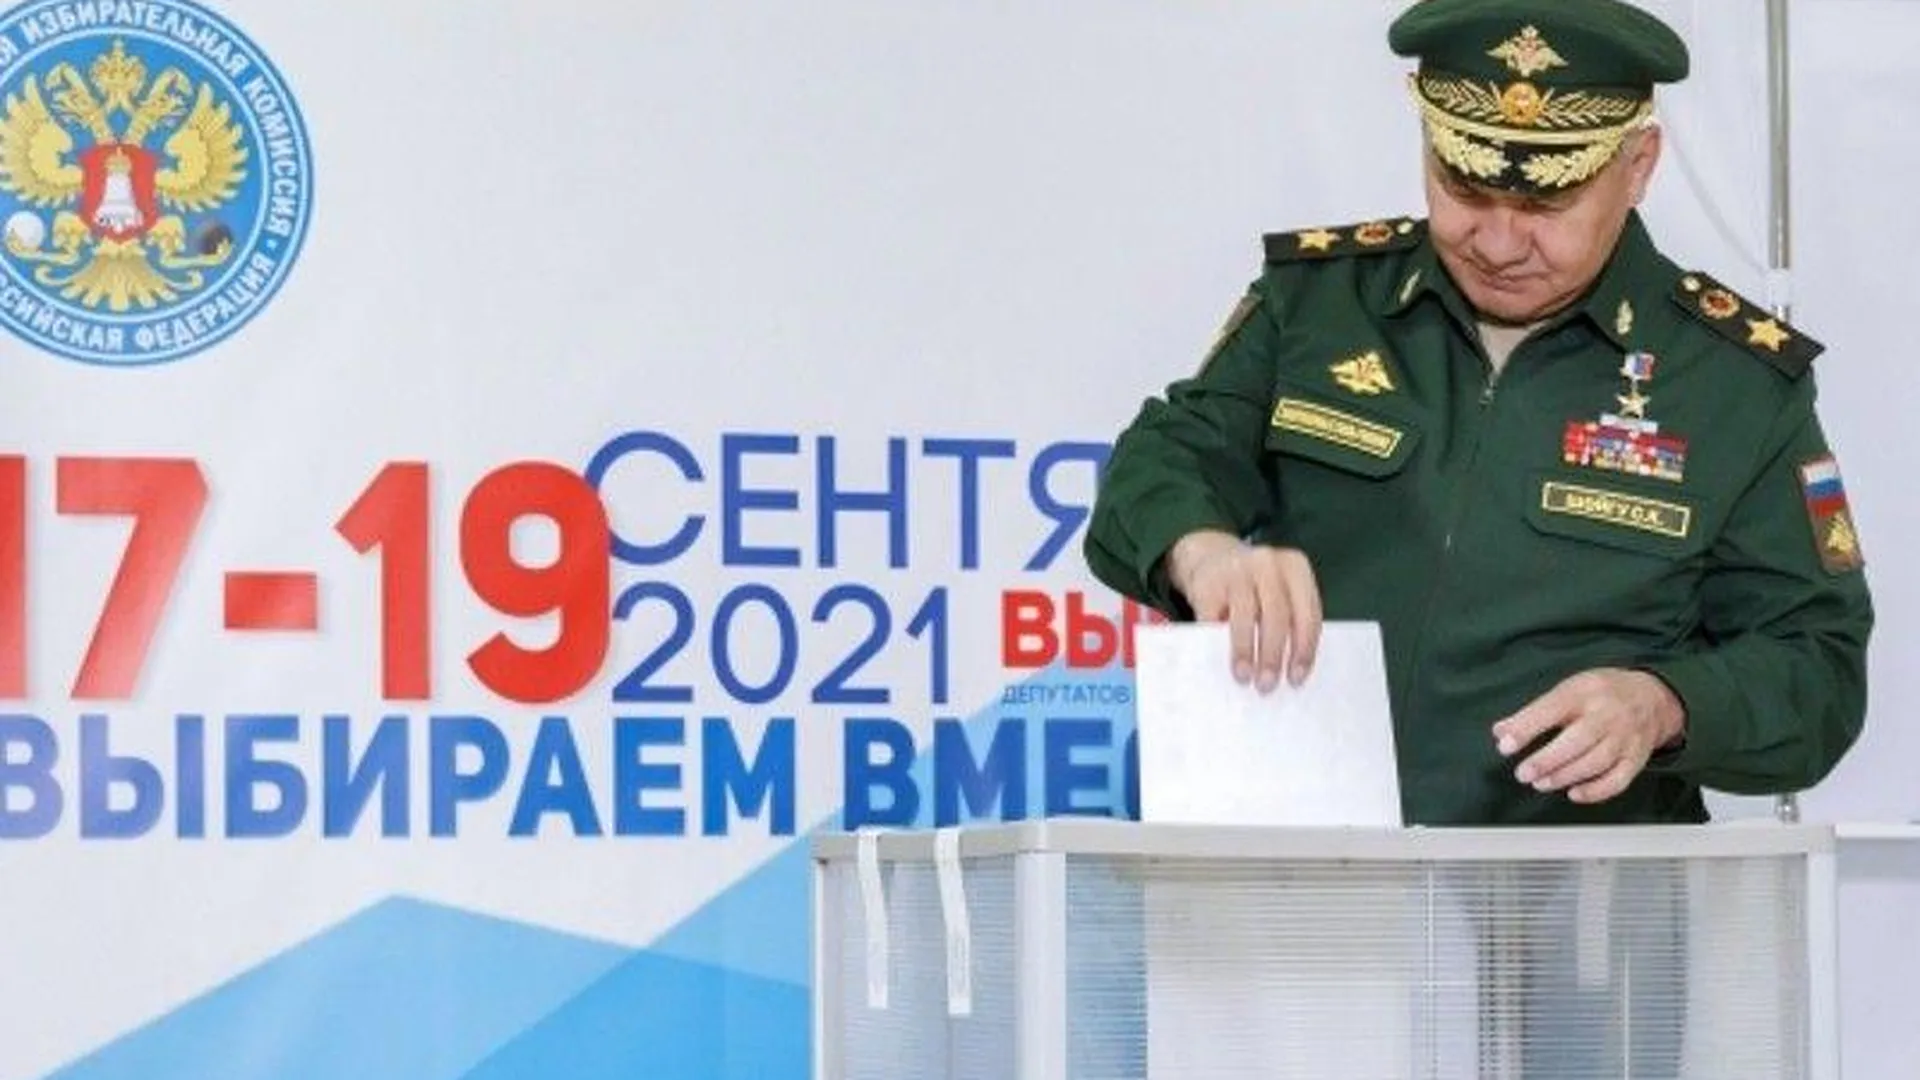 Сергей Шойгу принял участие в голосовании в Кубинке